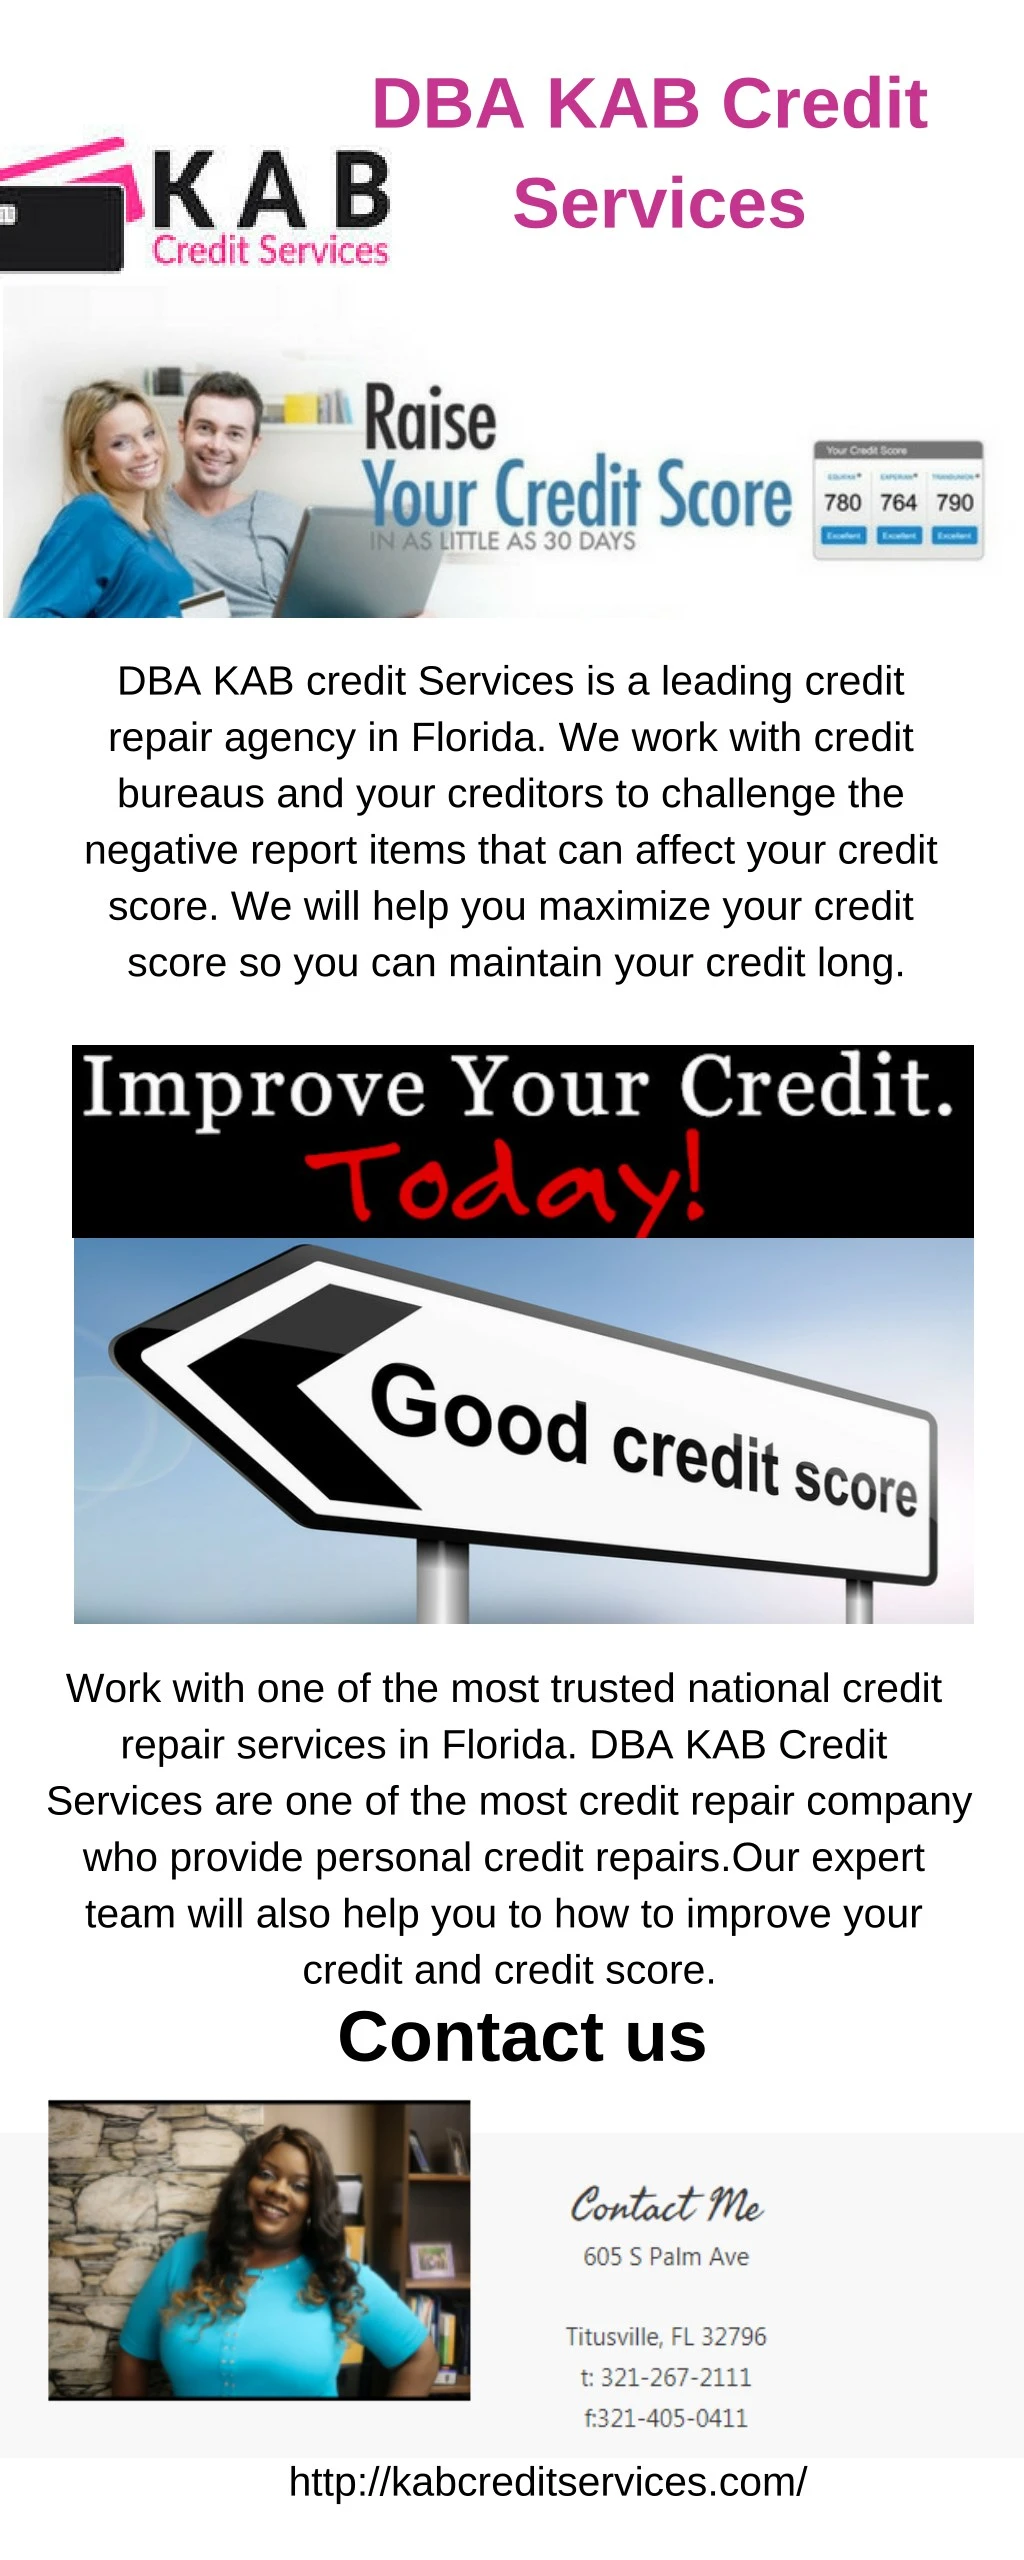 dba kab credit services